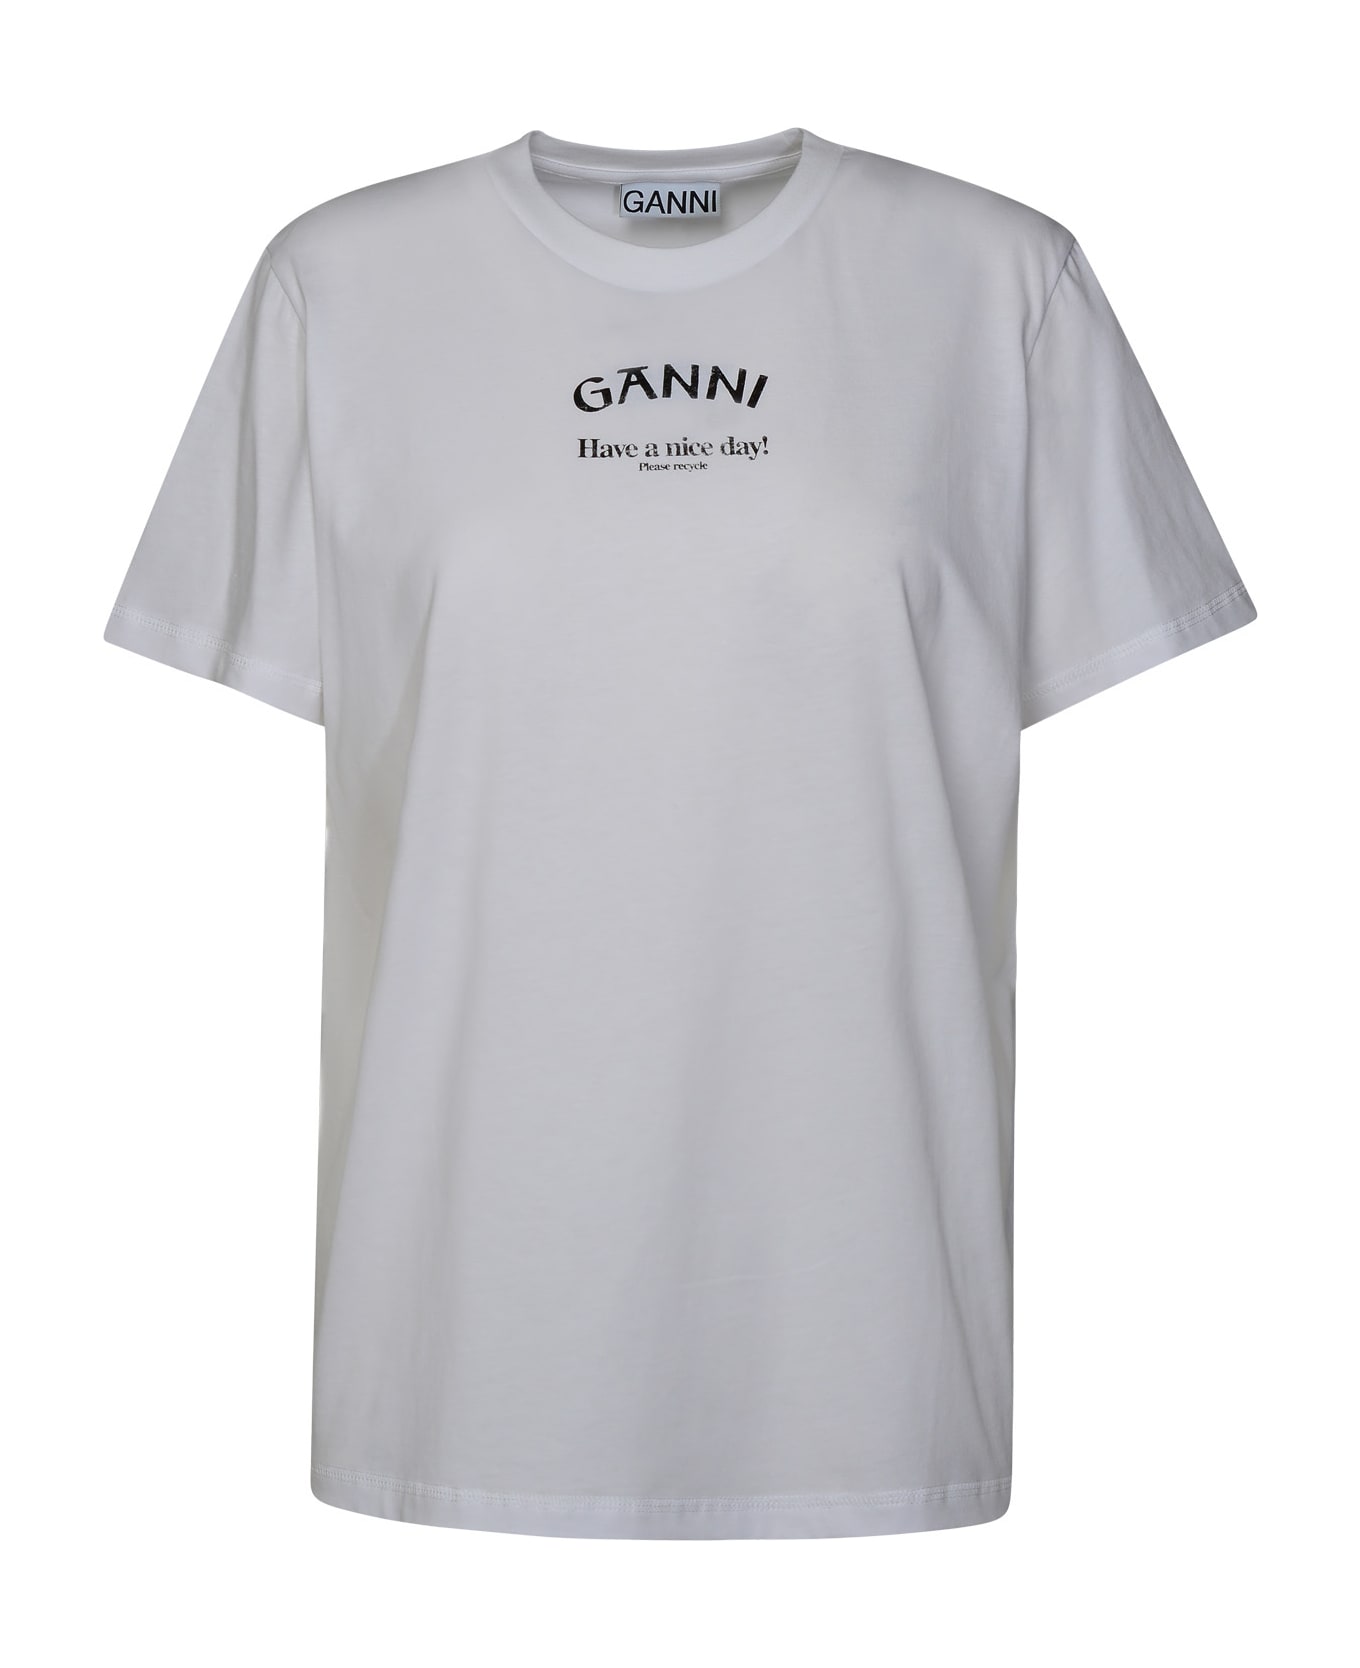 Ganni 'ganni' White Cotton T-shirt - White